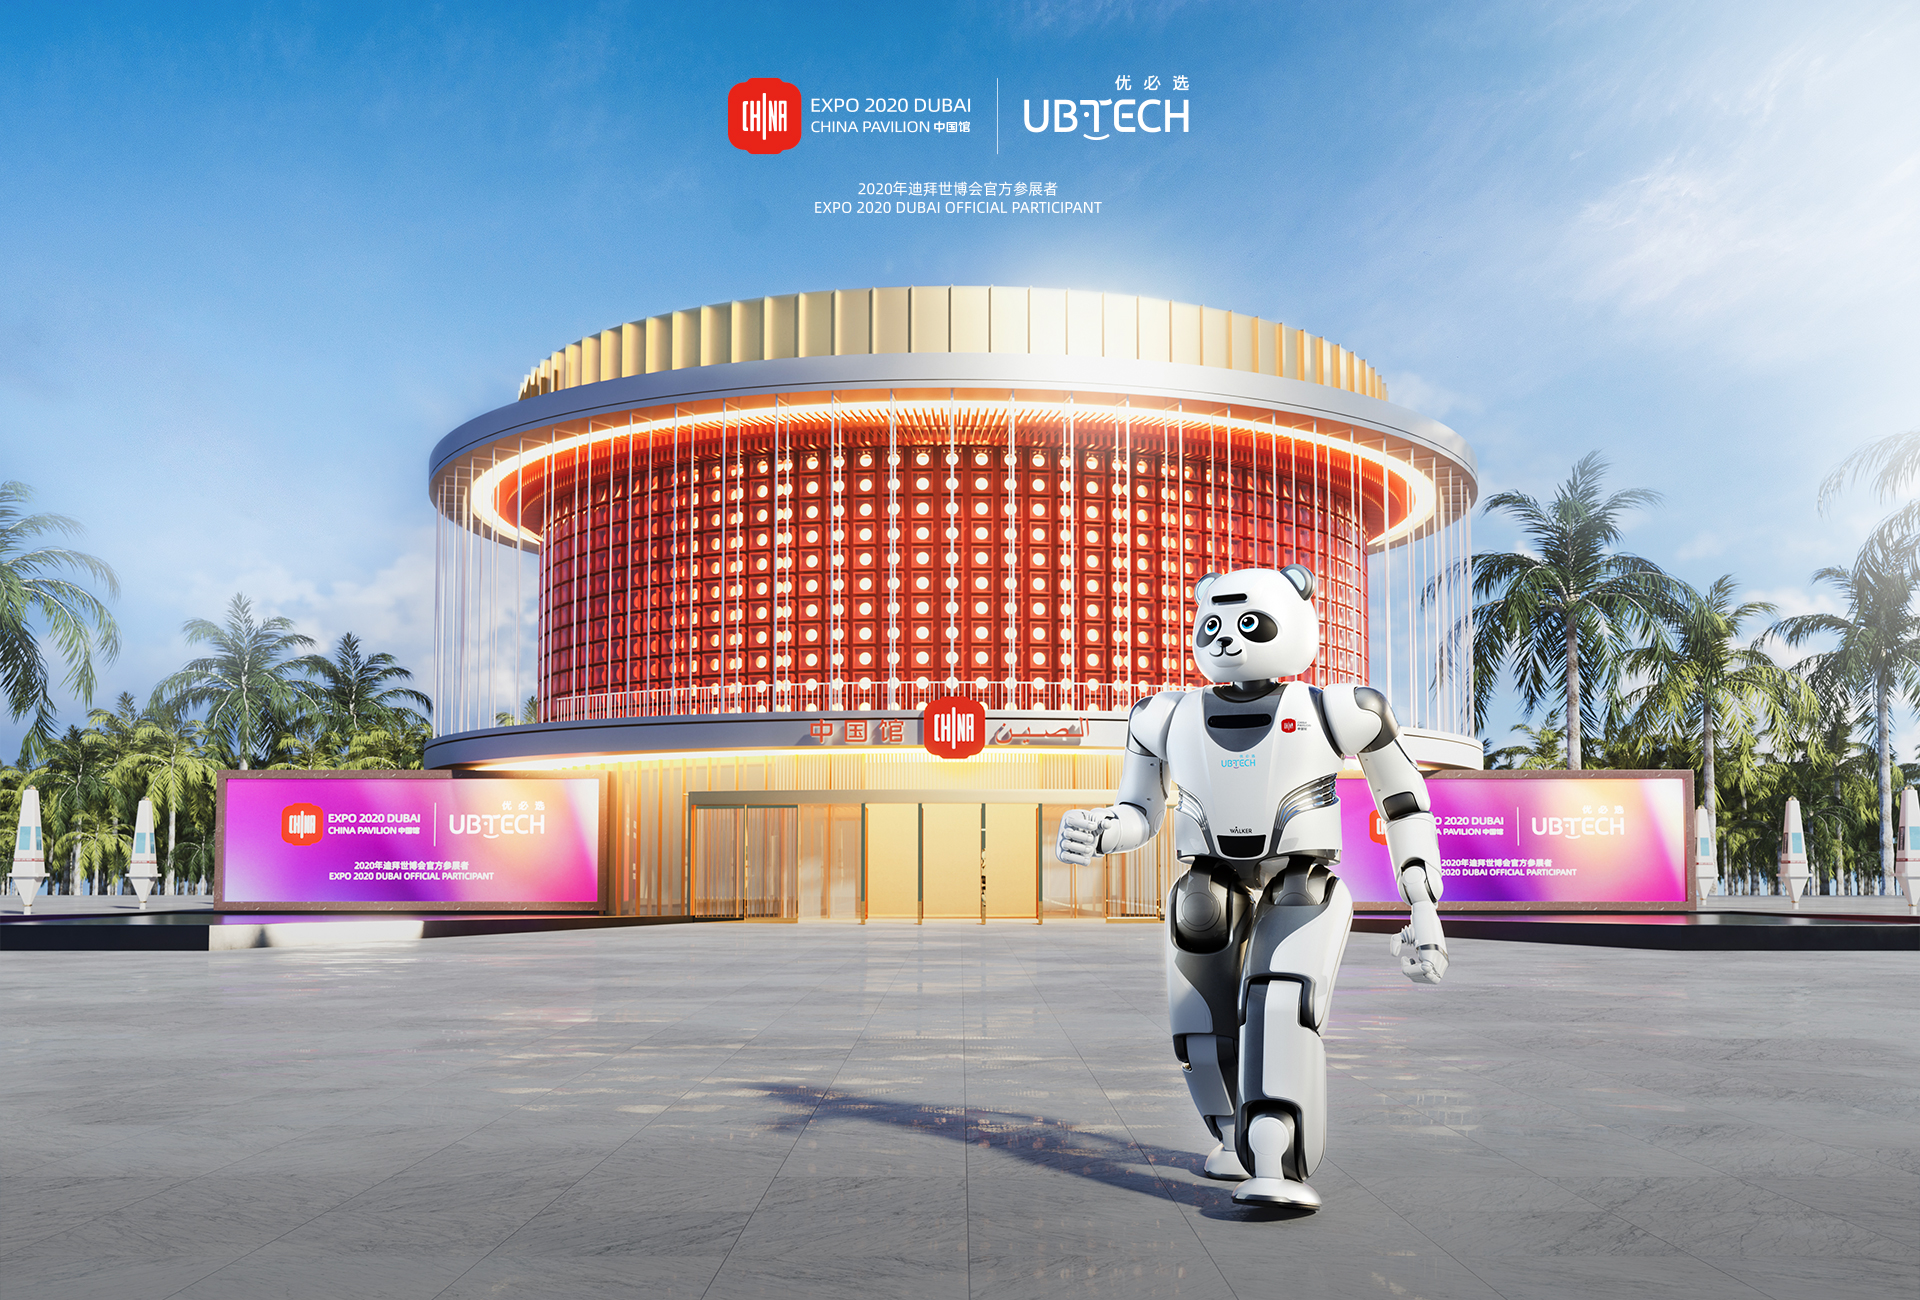 2020年迪拜世博会中国馆<br>官方唯一智能机器人合作伙伴